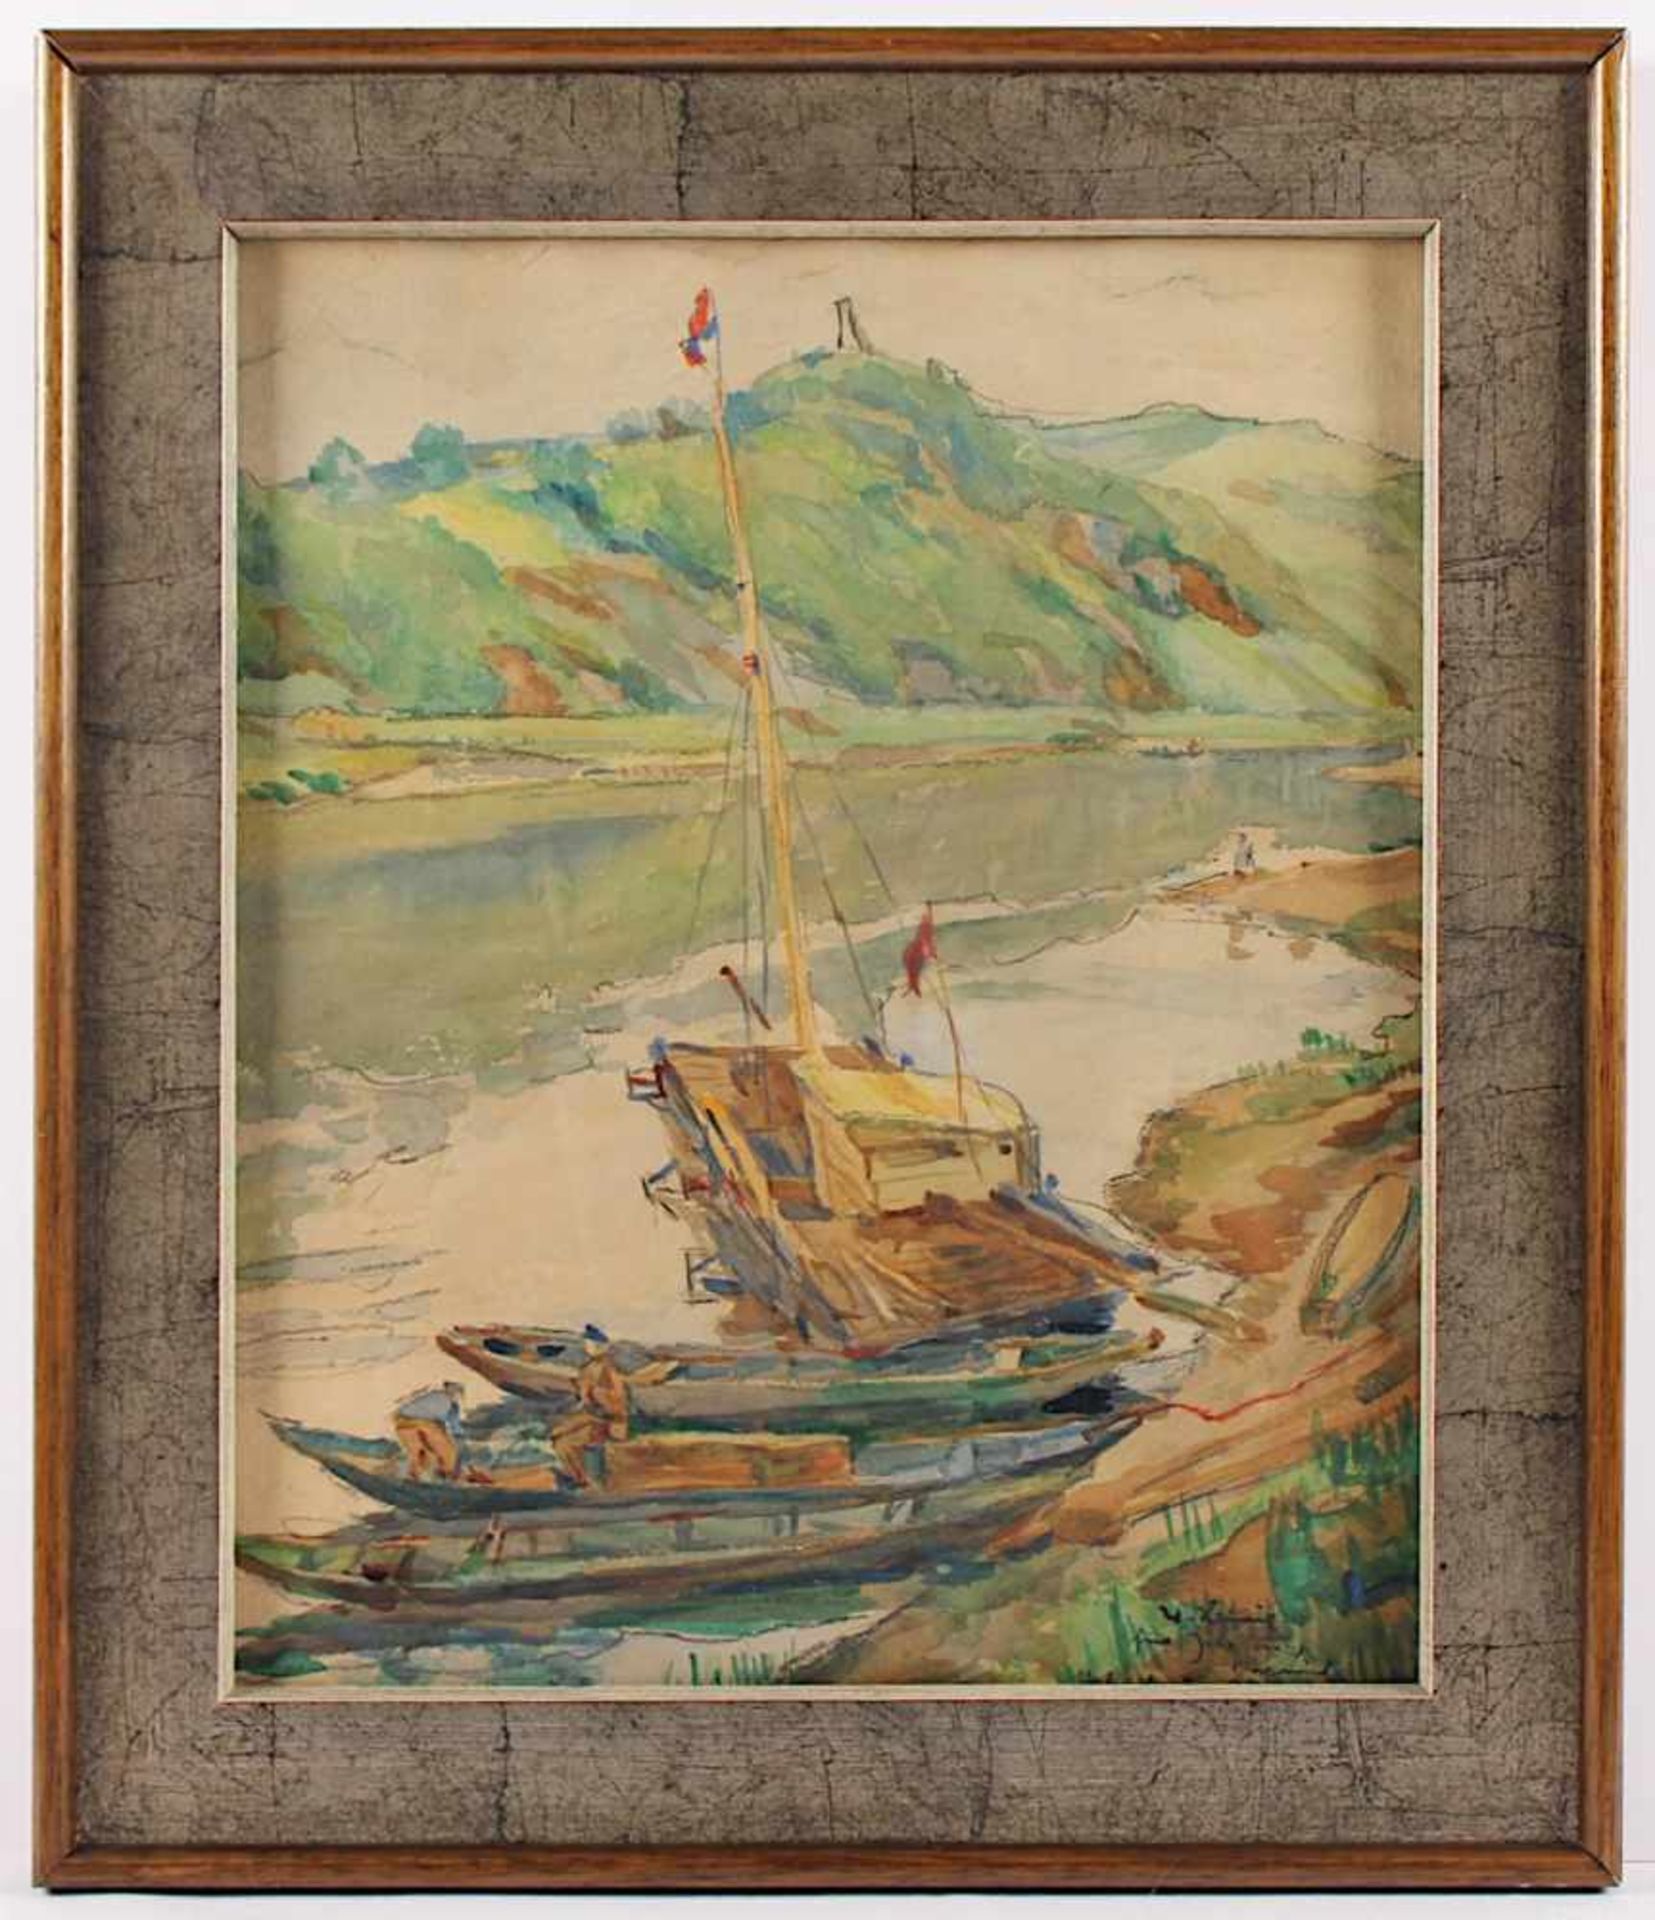 HEIMIG, Walter (1881-1955), "Flusslandschaft", Bleistift/Aquarell/Papier, 43 x 35, unten rechts